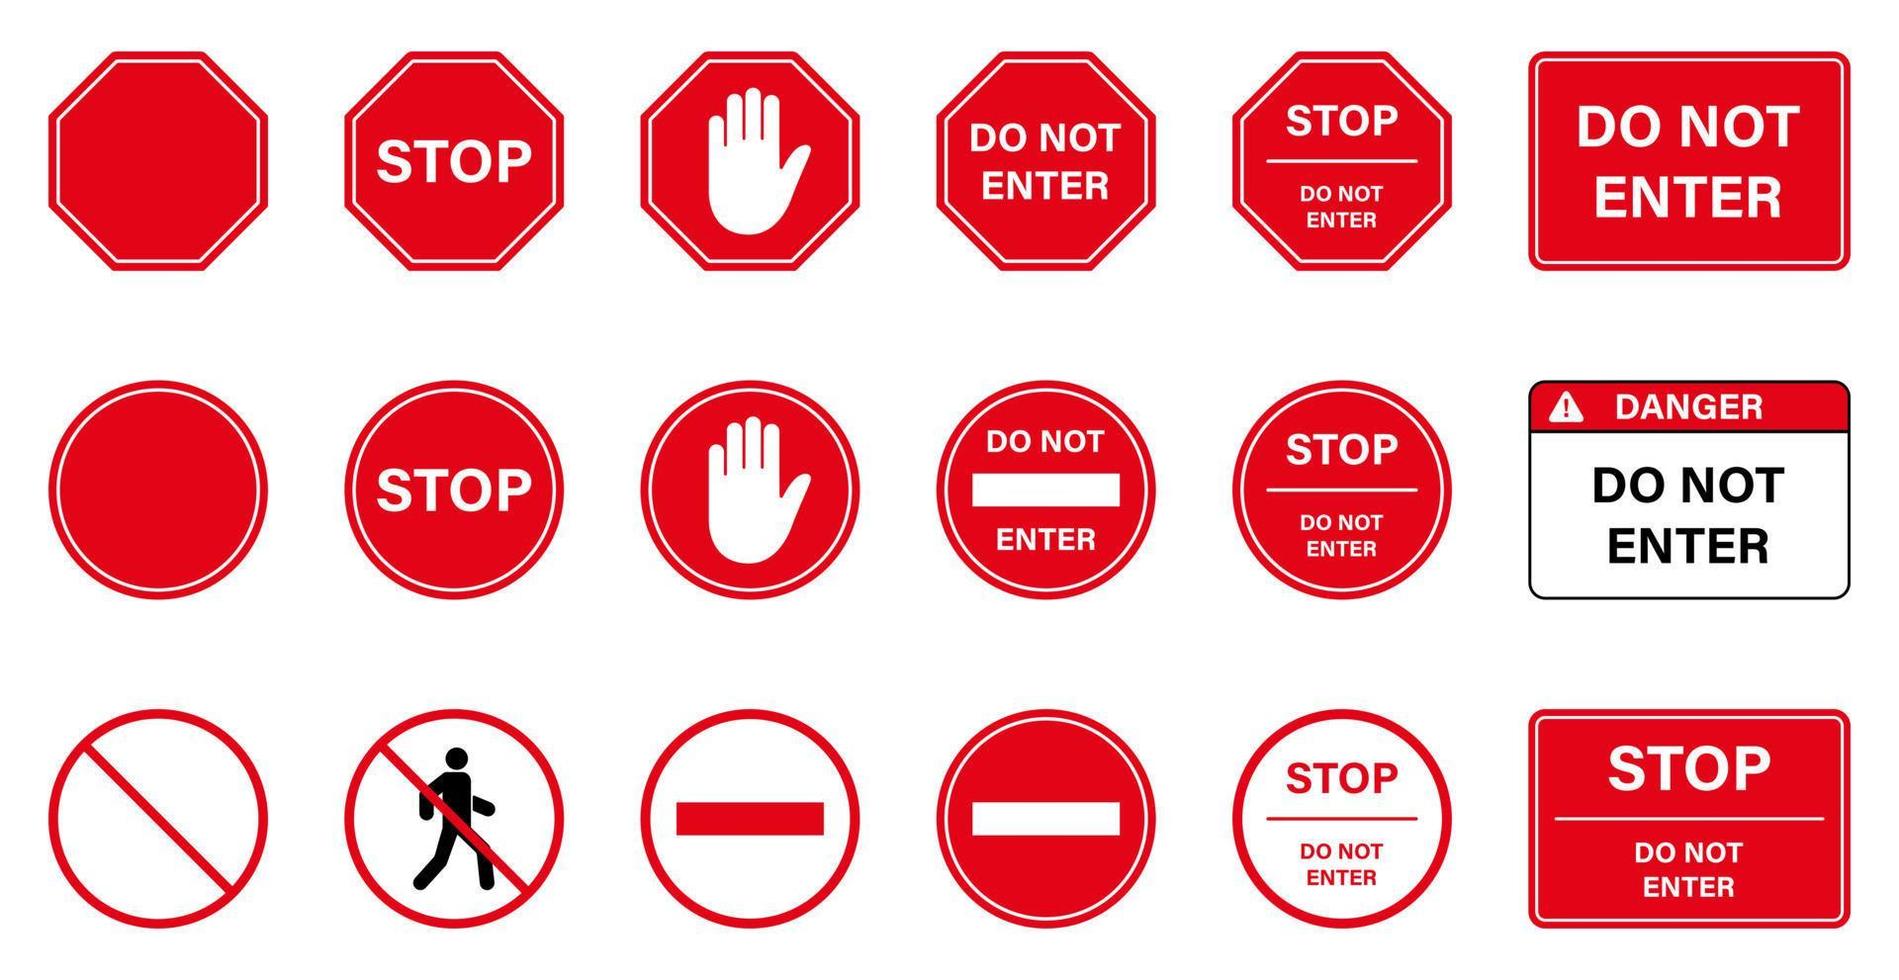 attenzione divieto di ingresso stop segnale stradale. ingresso vietato. avviso palm mano divieto accesso icona silhouette. non inserire il simbolo del cerchio rosso. pittogramma di traffico vietato. illustrazione vettoriale isolata.